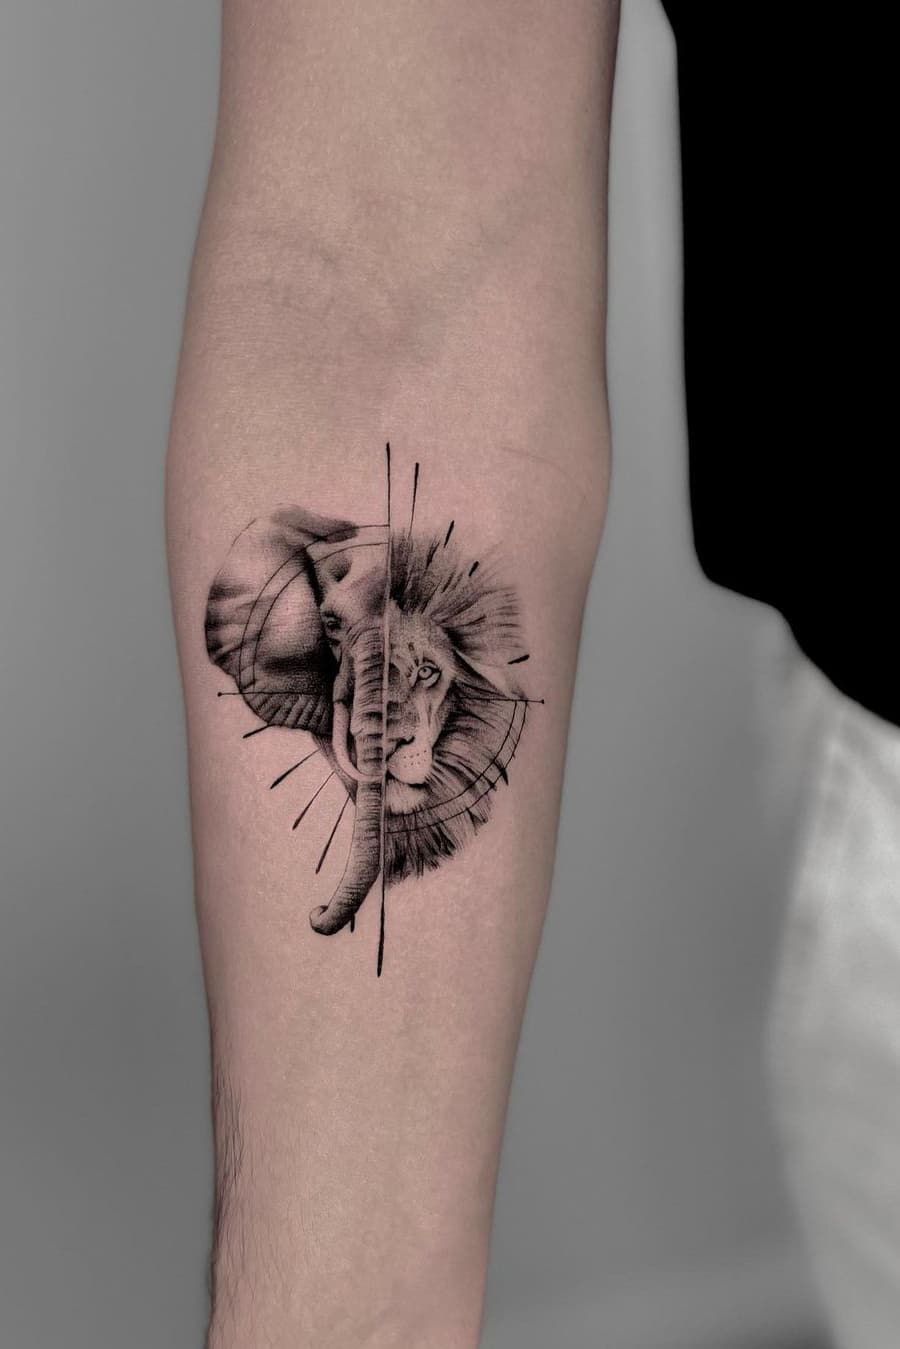 Elephant and lion tattoo